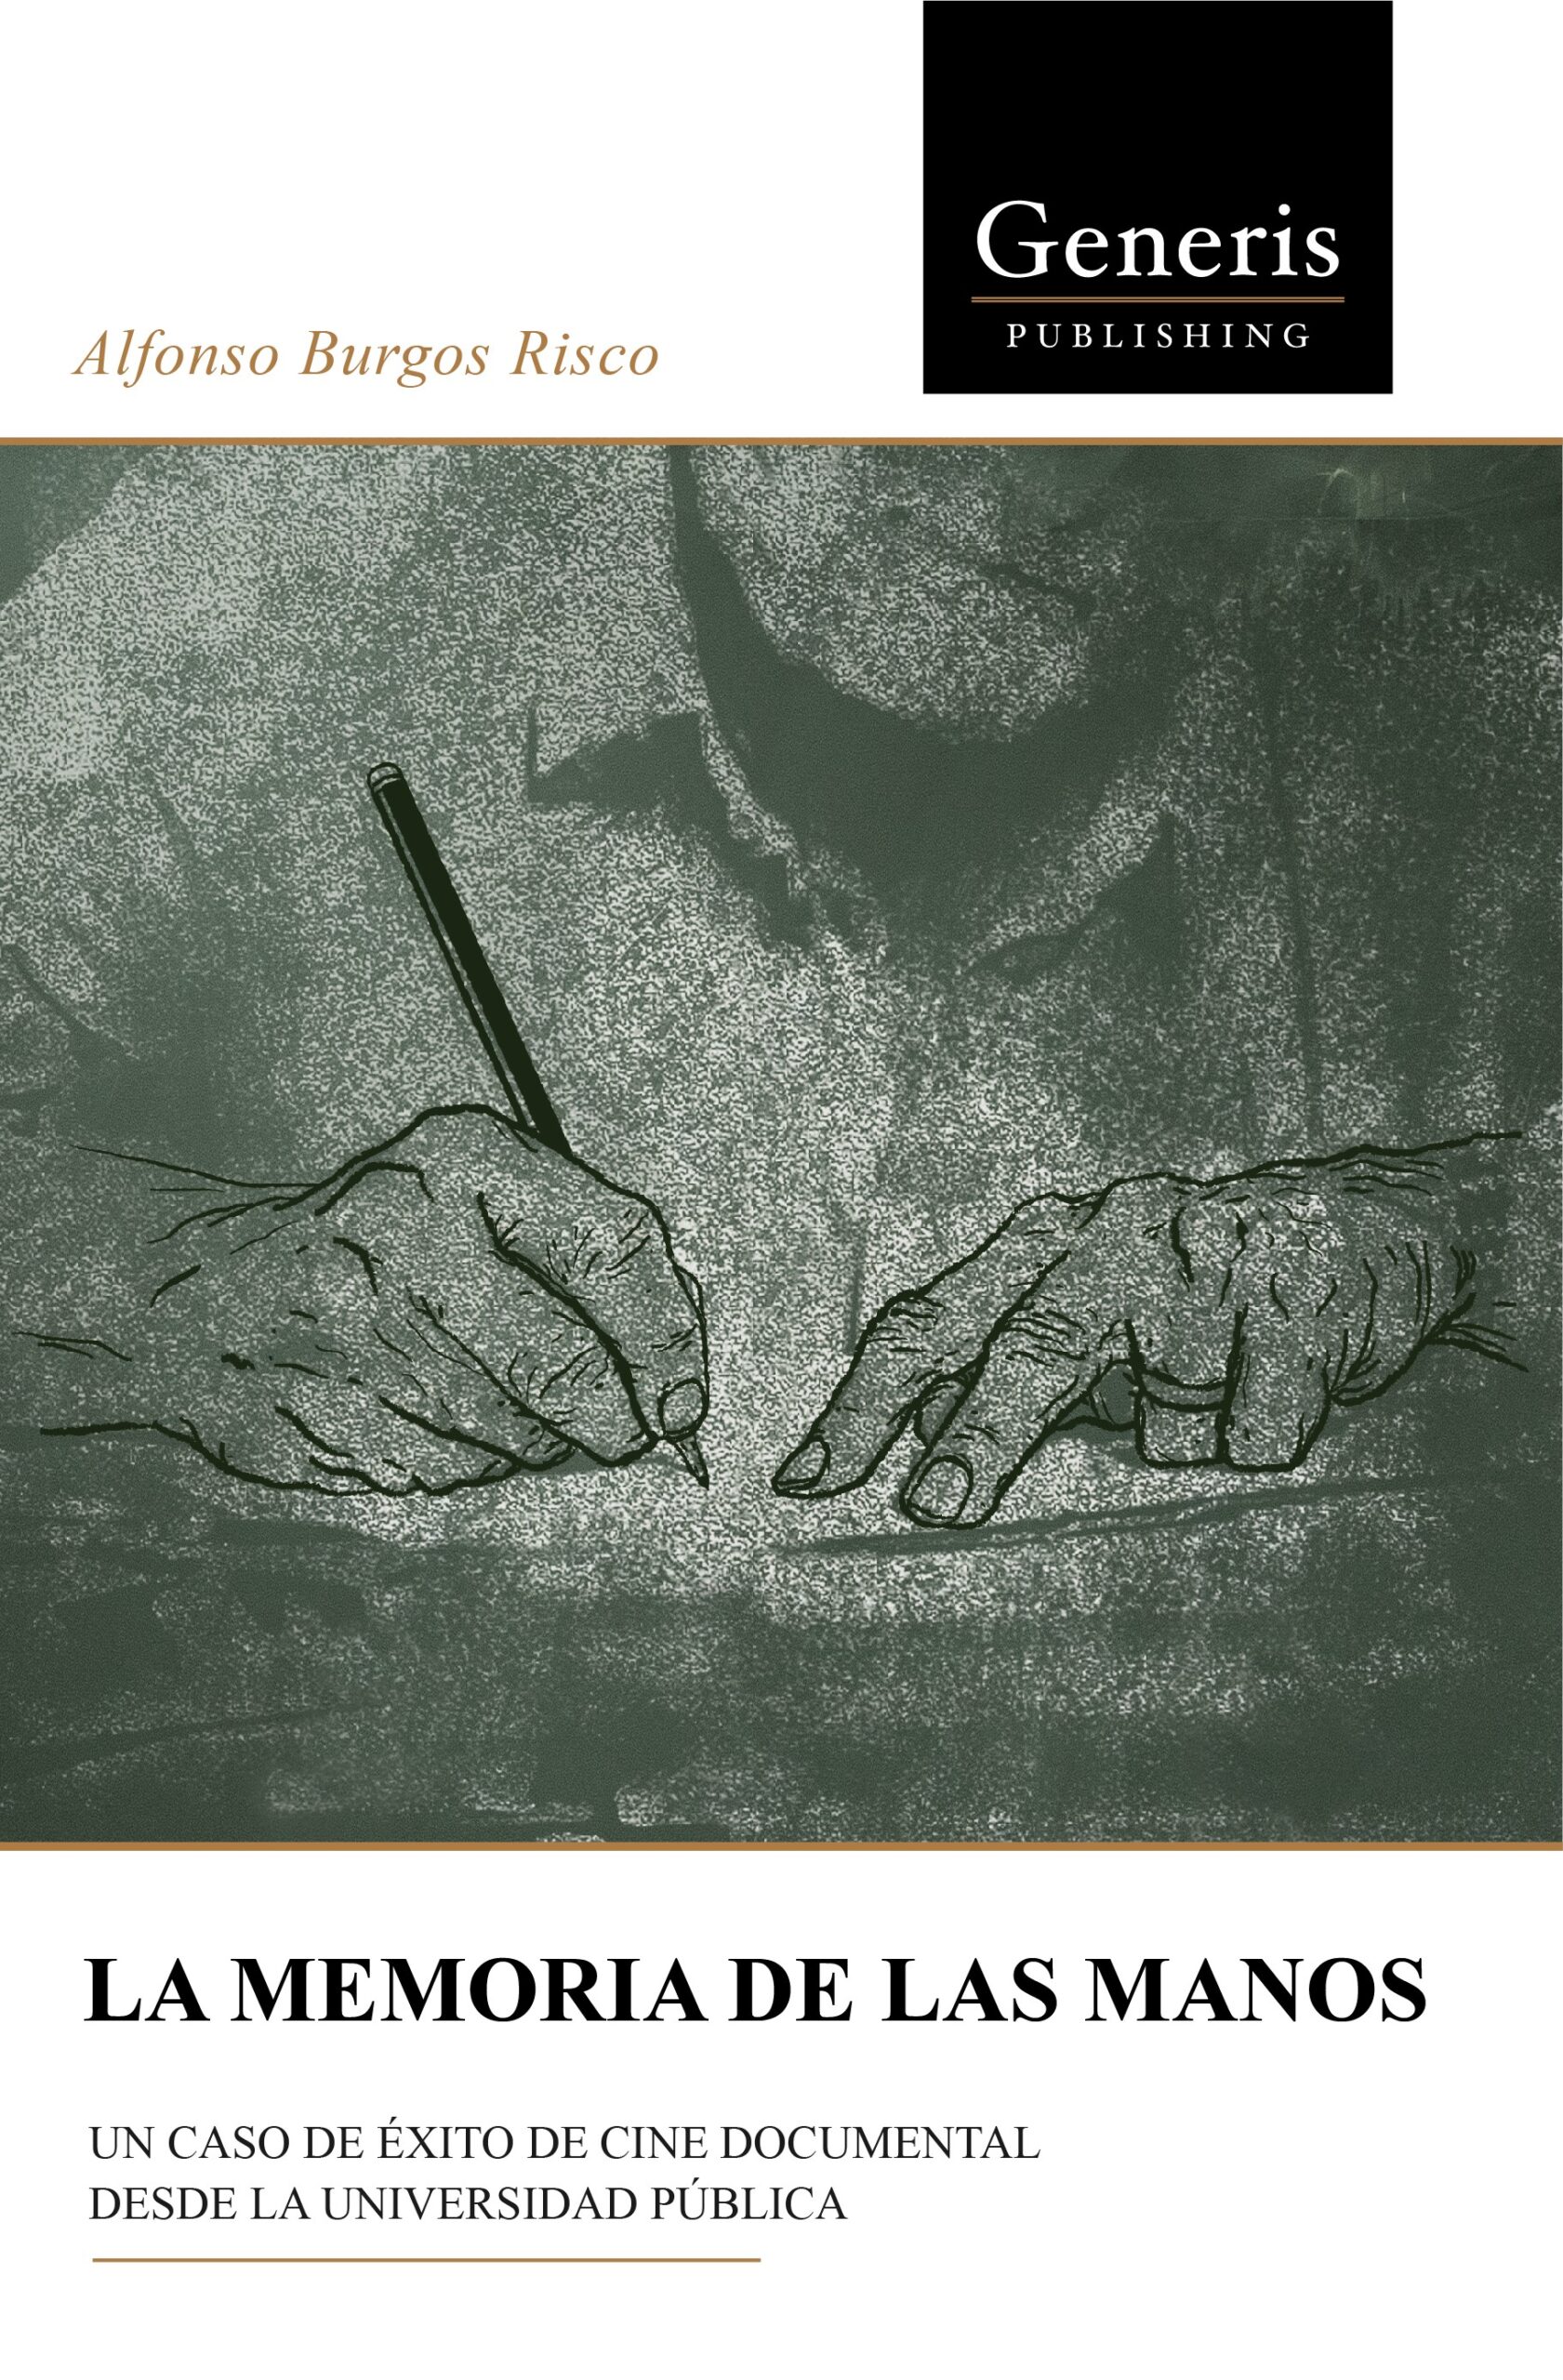 Imagen de portada del libro La memoria de las manos